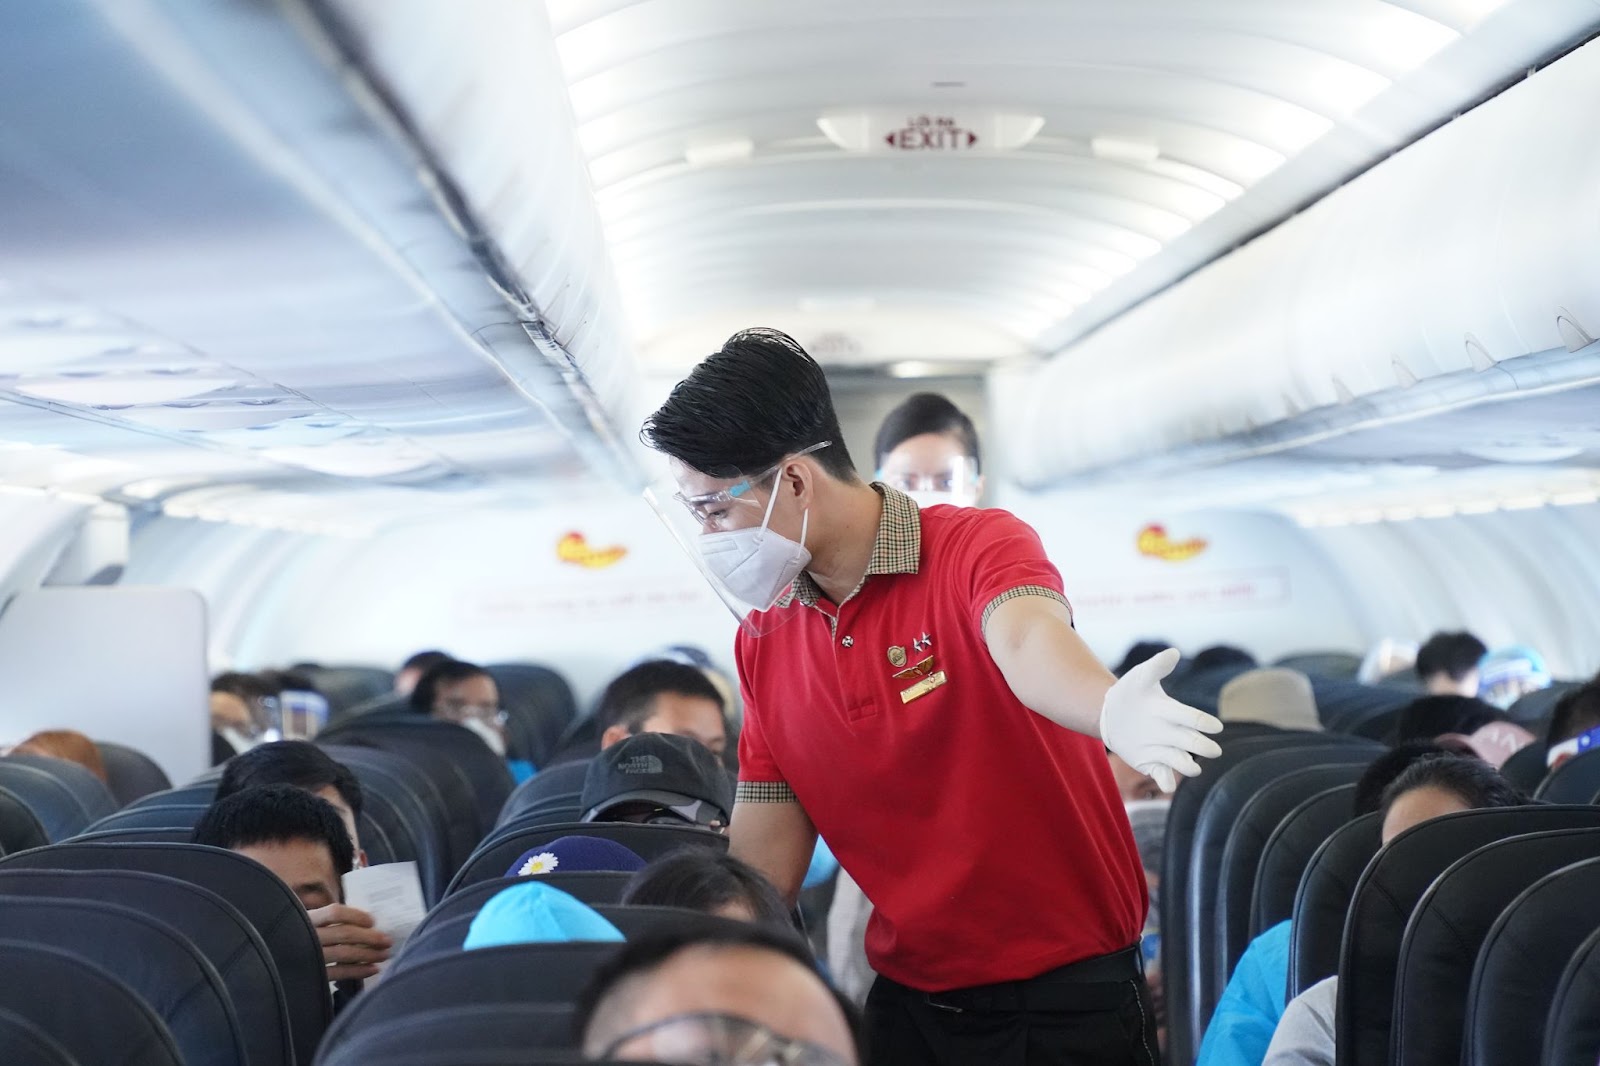 Chuyến bay 0 đồng của Vietjet Air và hành trình trở về quê hương của người lao động xa xứ - ảnh 6